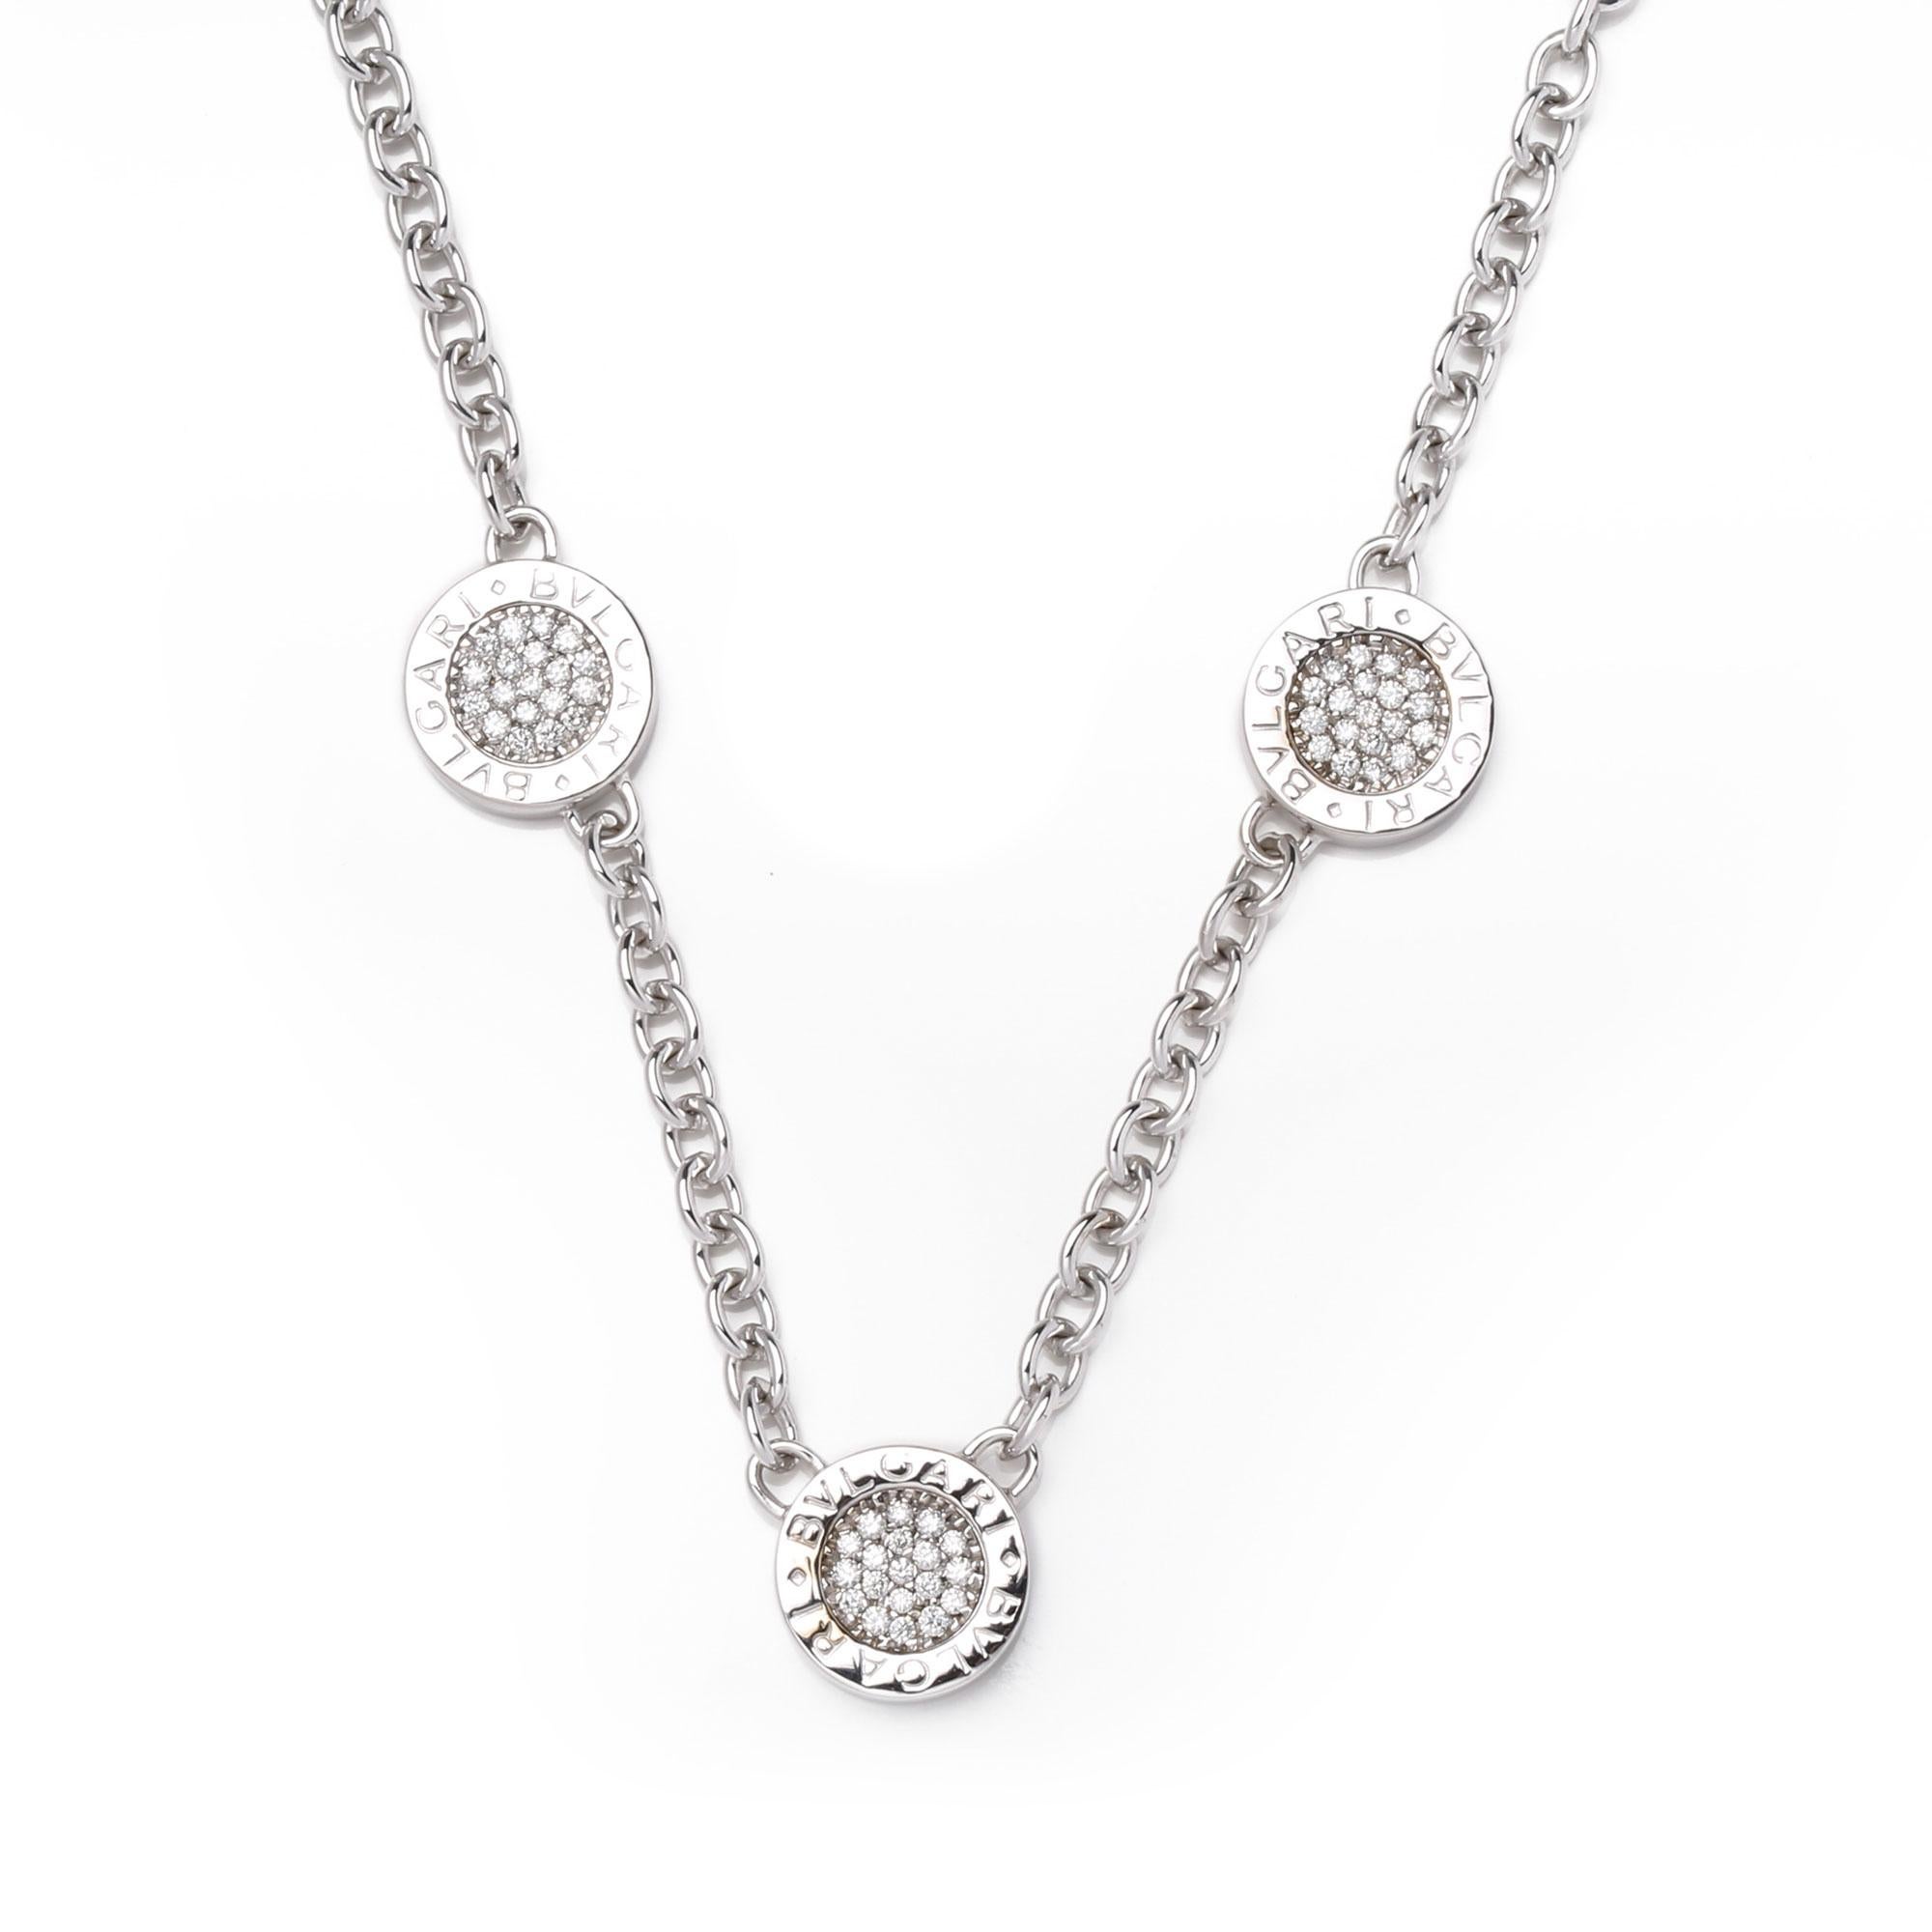 Contemporary Bulgari Onyx and Diamond Necklace